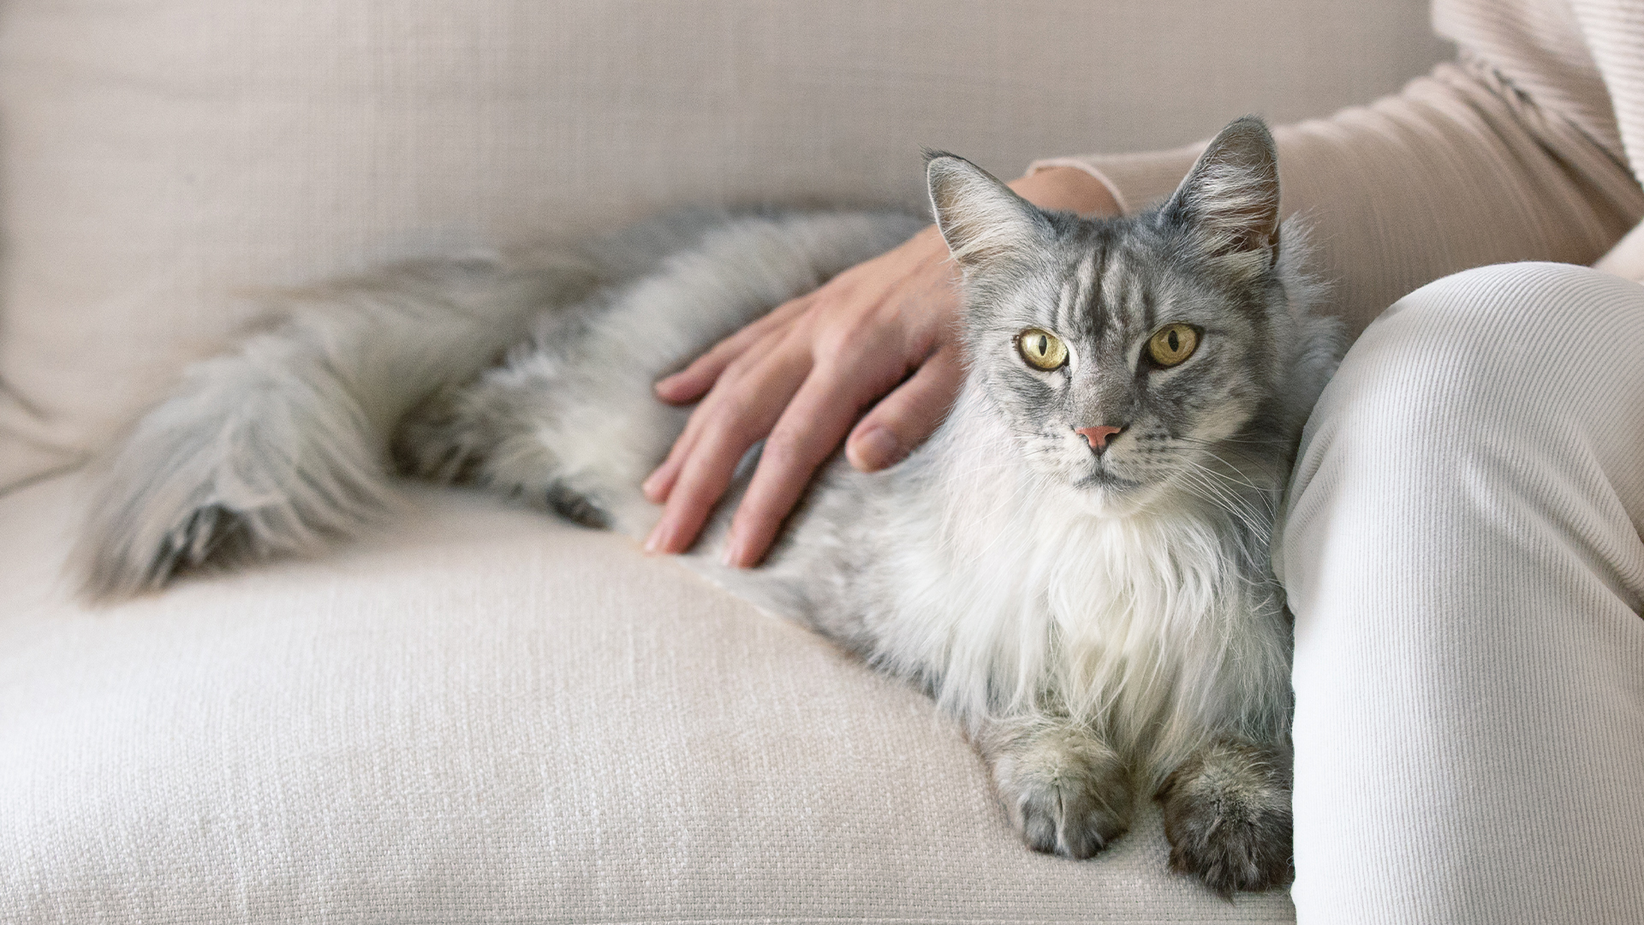 O pisică cenușie cu păr lung, întinsă pe o canapea, cu mâna proprietarului pe spate